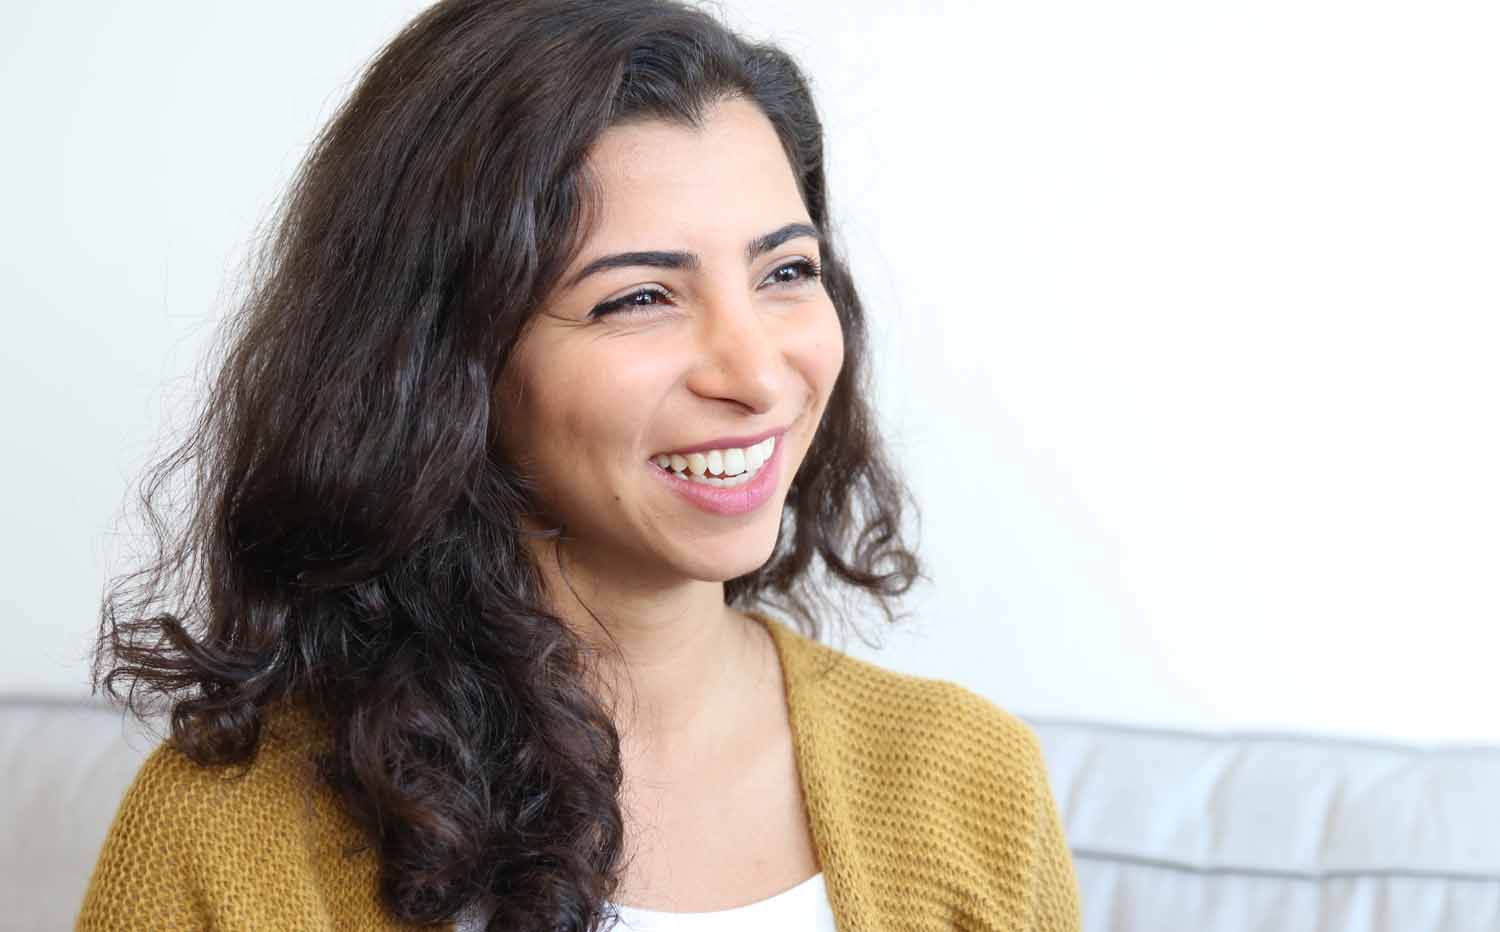 Sahar Rahimi, Oecotrophologie-Studentin an der FH Münster, ist Stipendiatin der Heinrich-Böll-Stiftung. Ihre Mitstudierenden möchte sie ermutigen, die vielen Möglichkeiten zu erkunden und zu nutzen. 